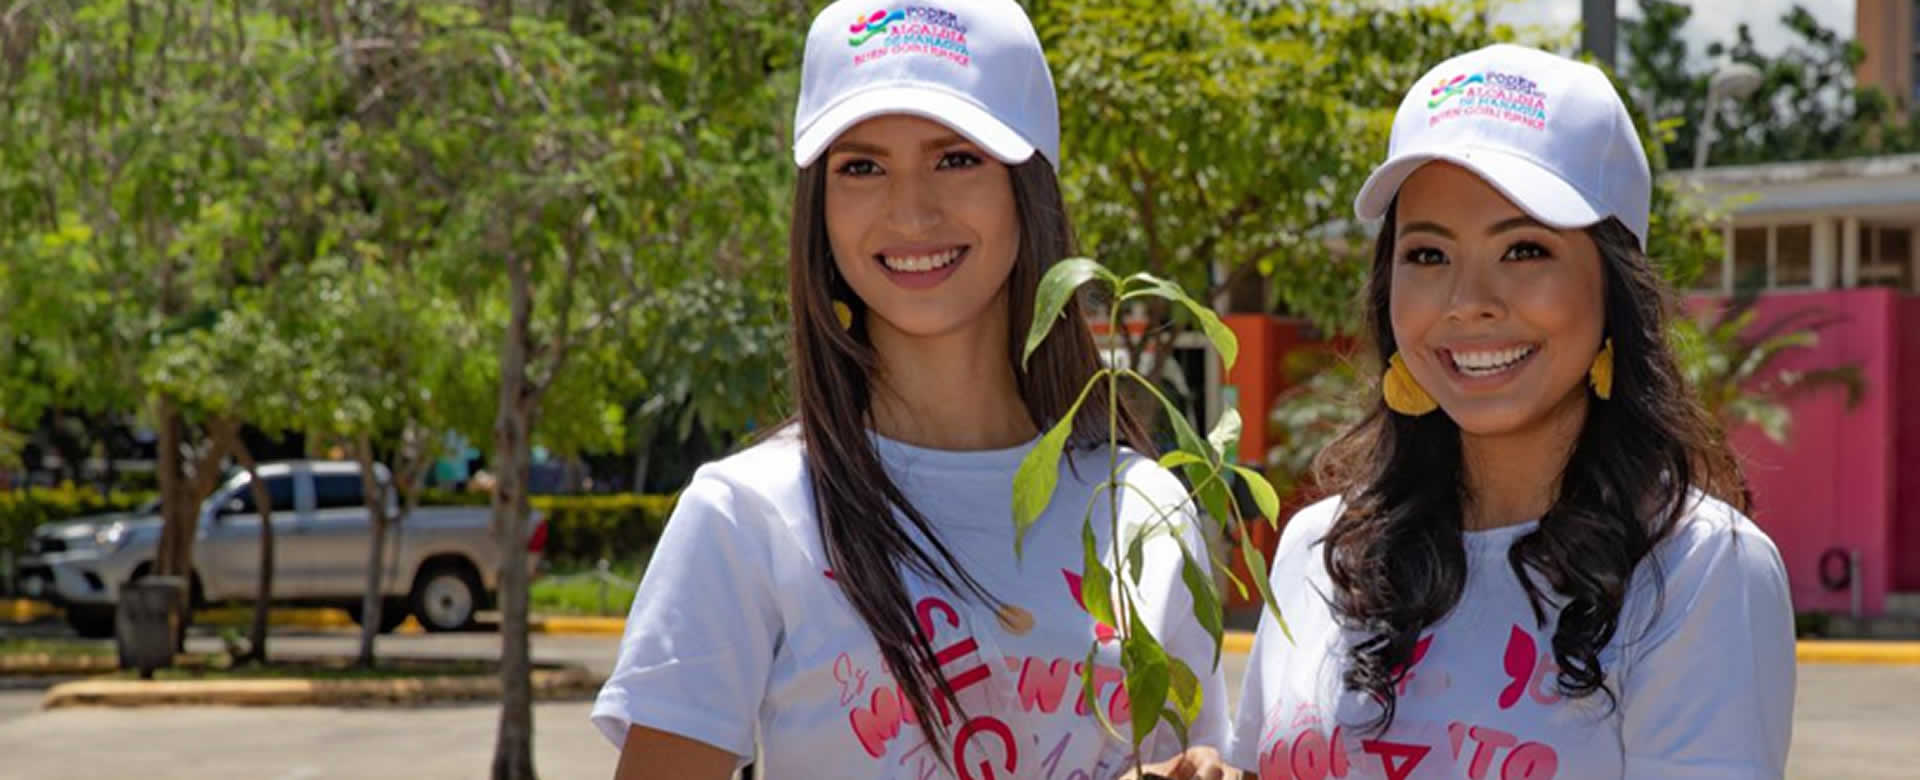 Candidatas a Miss Teen Nicaragua reforestan centro de recreación